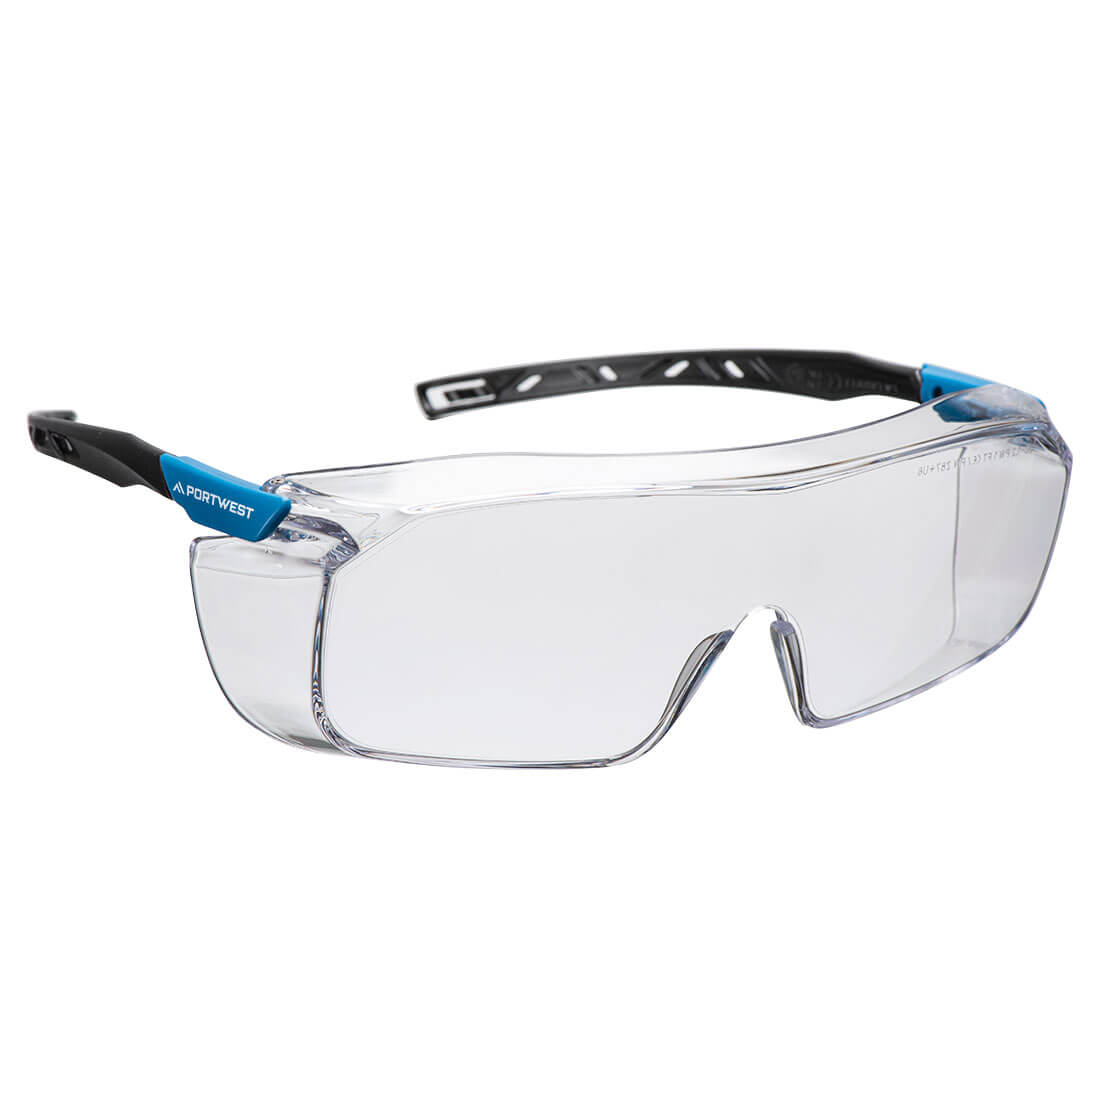 Portwest Top OTG Safety Glasses